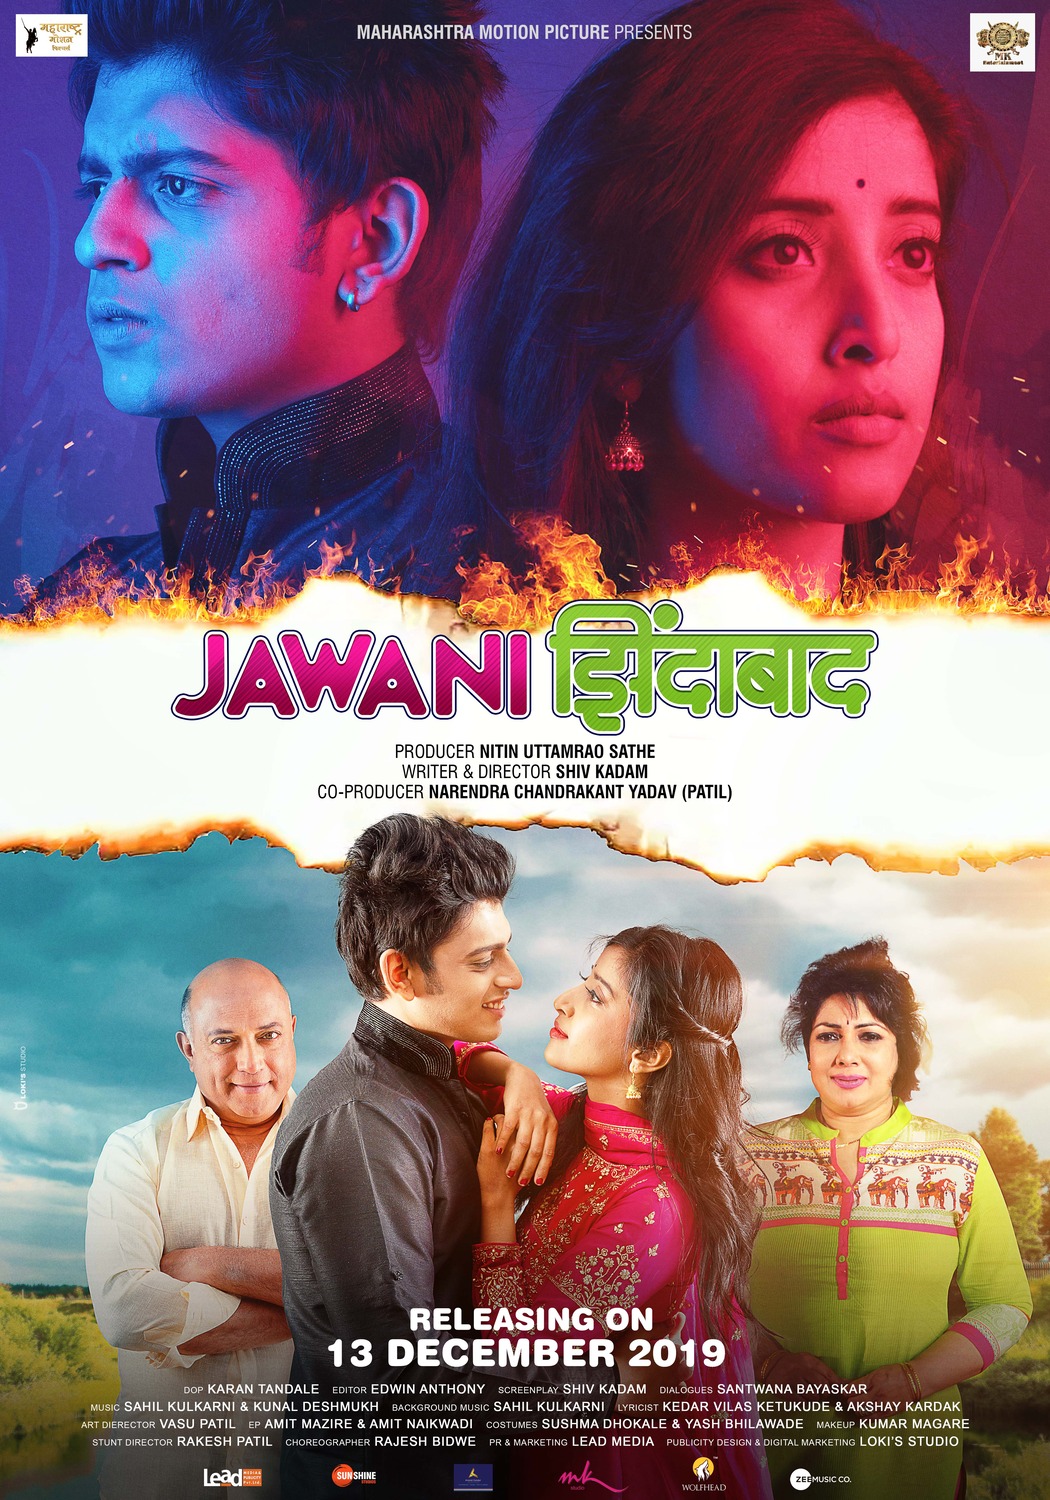 Extra Large Movie Poster Image for Jawani Zindabad (#2 of 2)